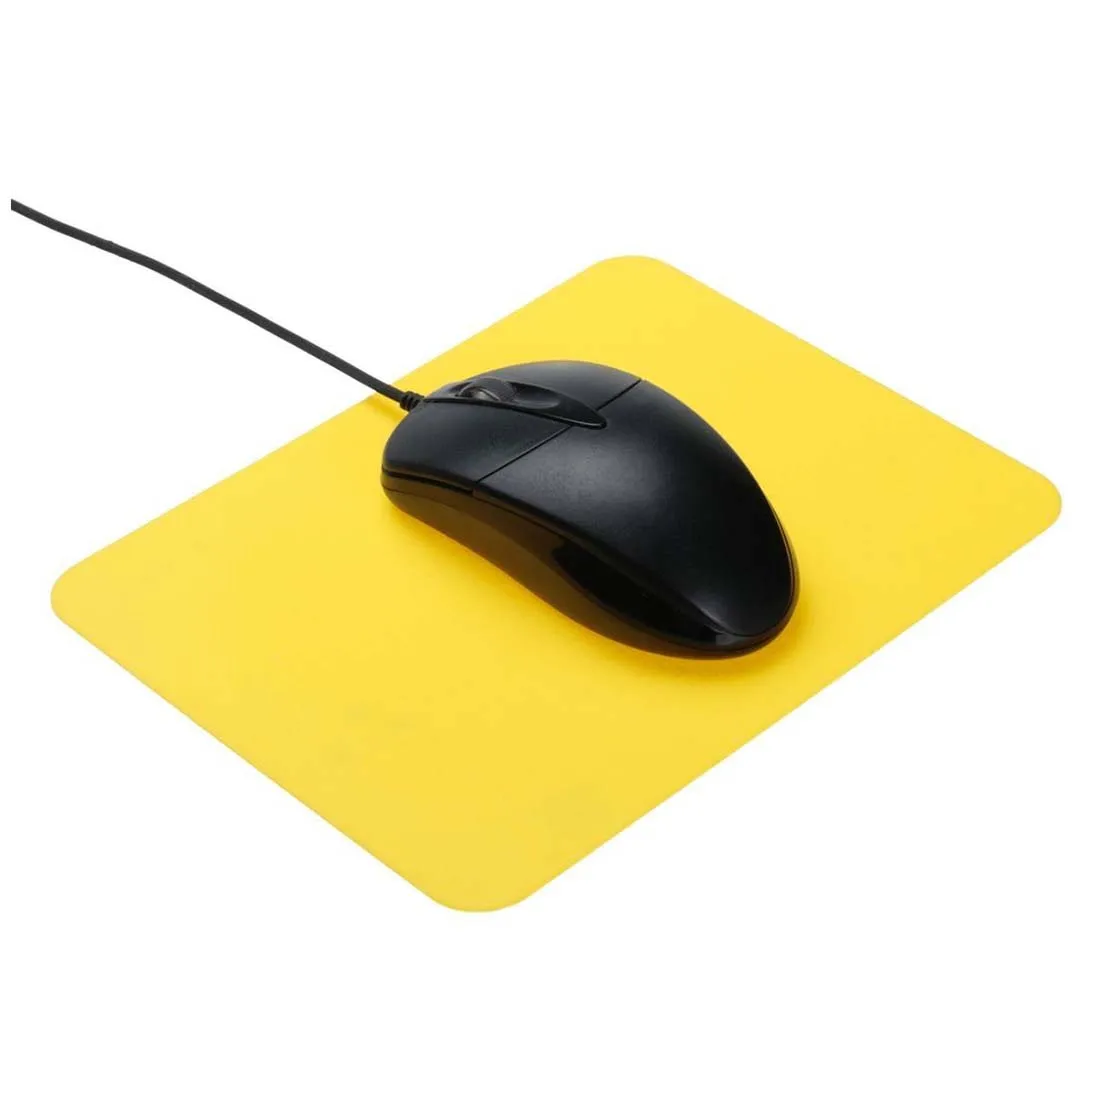 Игровой коврик для мыши Leicht тонкий Противоскользящий силиконовый гель игровая мышь матовый коврик для мыши мышь для ПК ноутбука компьютера